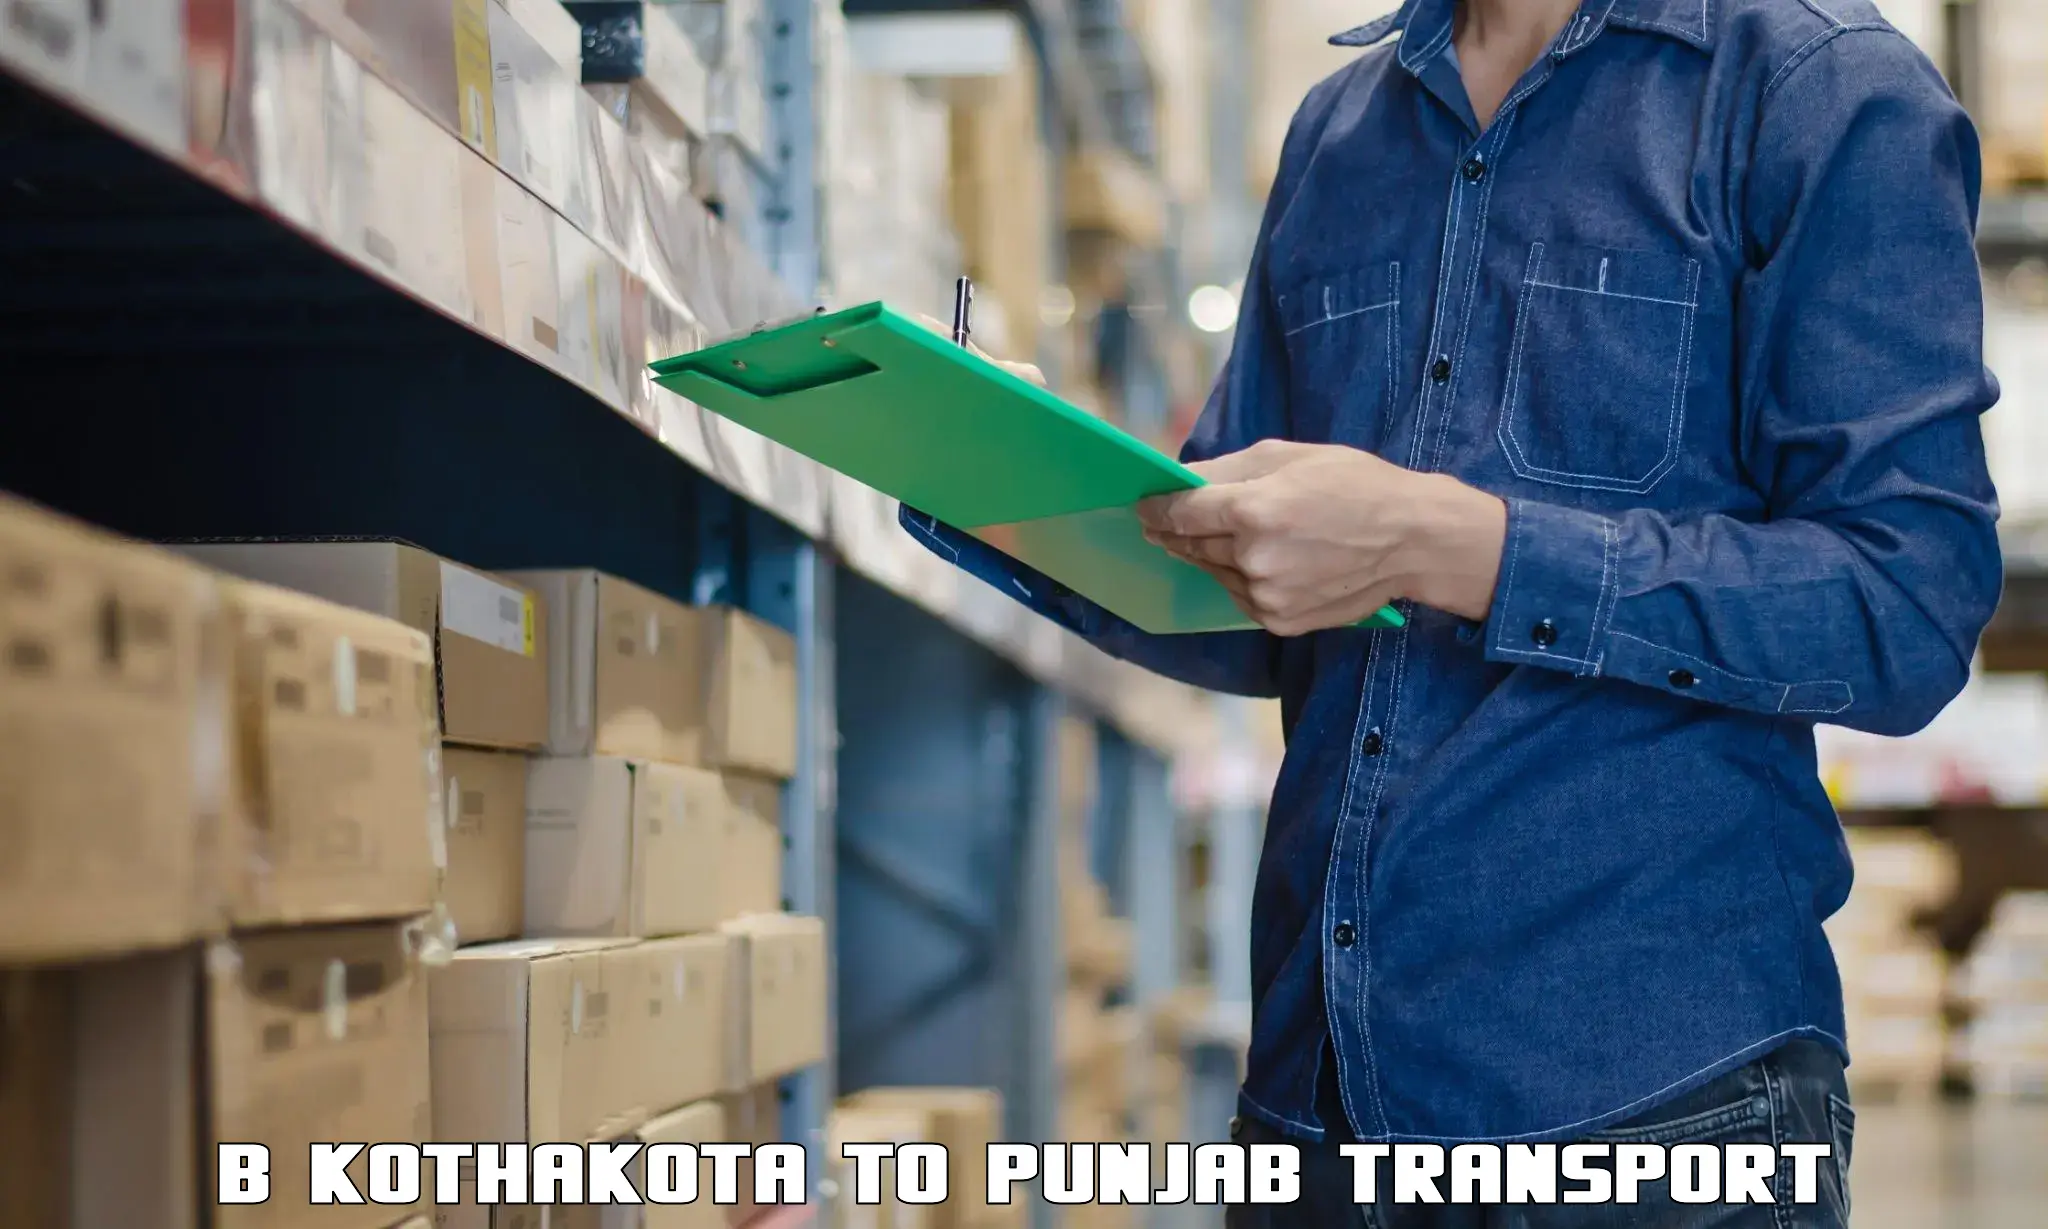 Scooty parcel B Kothakota to Punjab